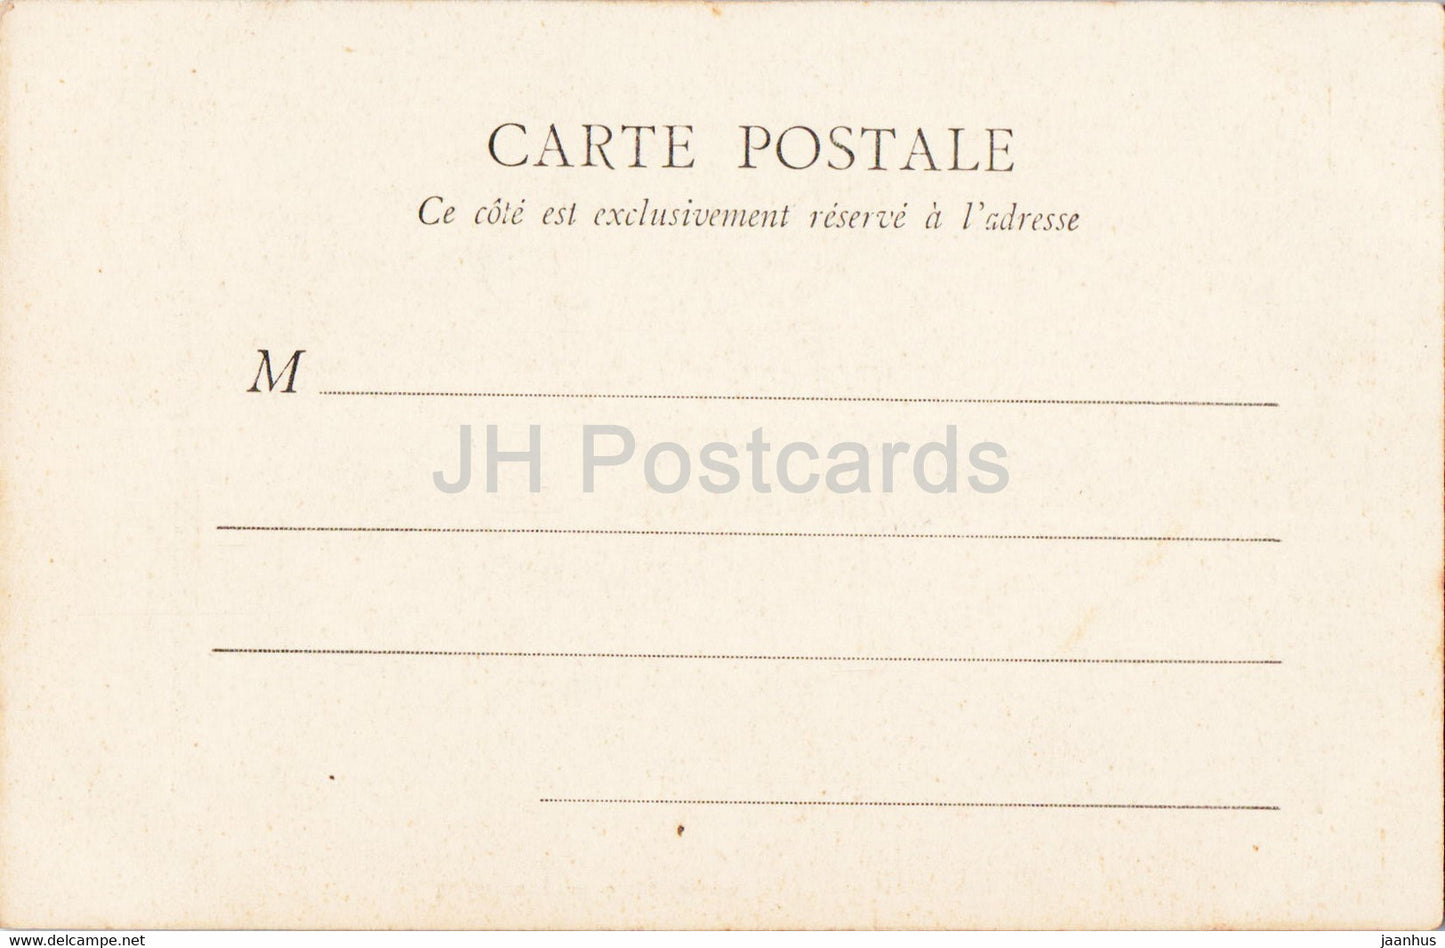 Amiens - Cathédrale - Portail de la Vierge dorée - cathédrale - 56 - carte postale ancienne - France - inutilisée